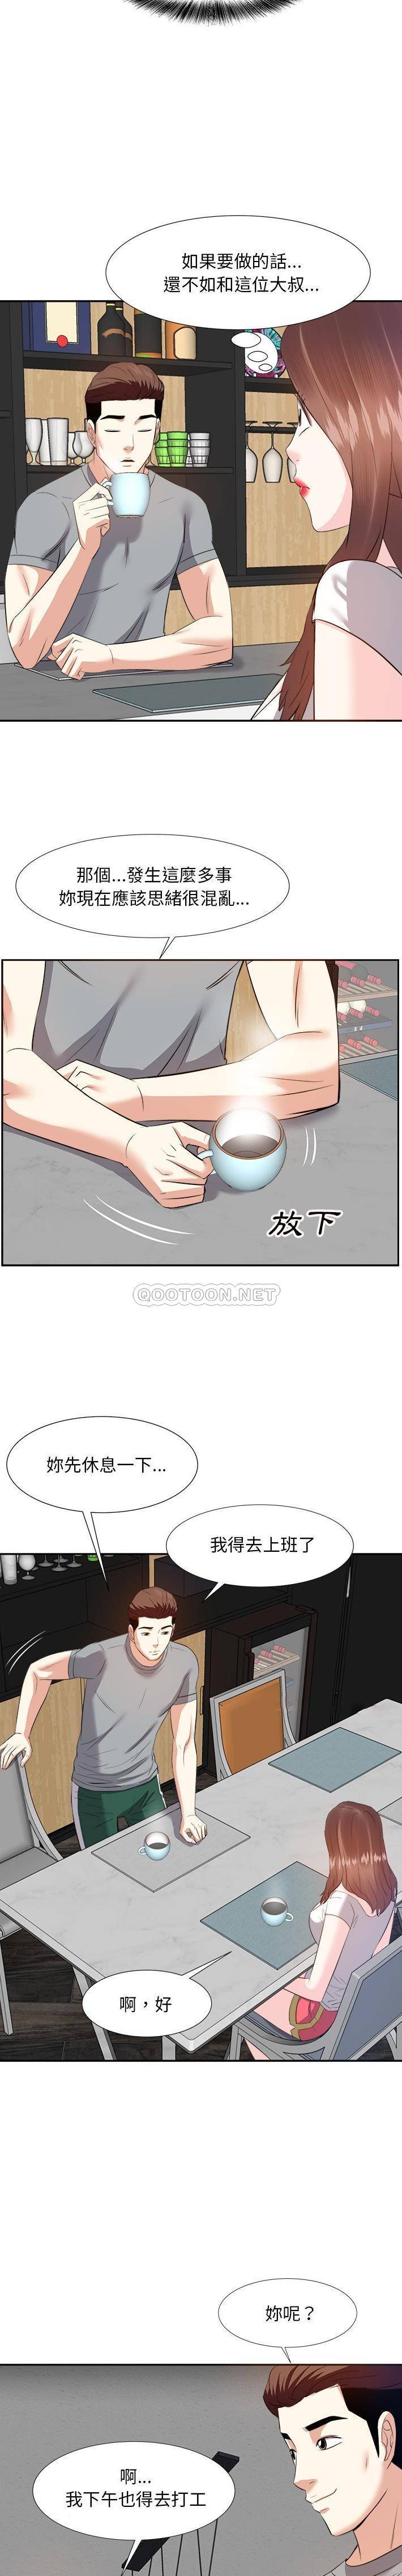 韩国污漫画 甜心幹爹 第13话 8